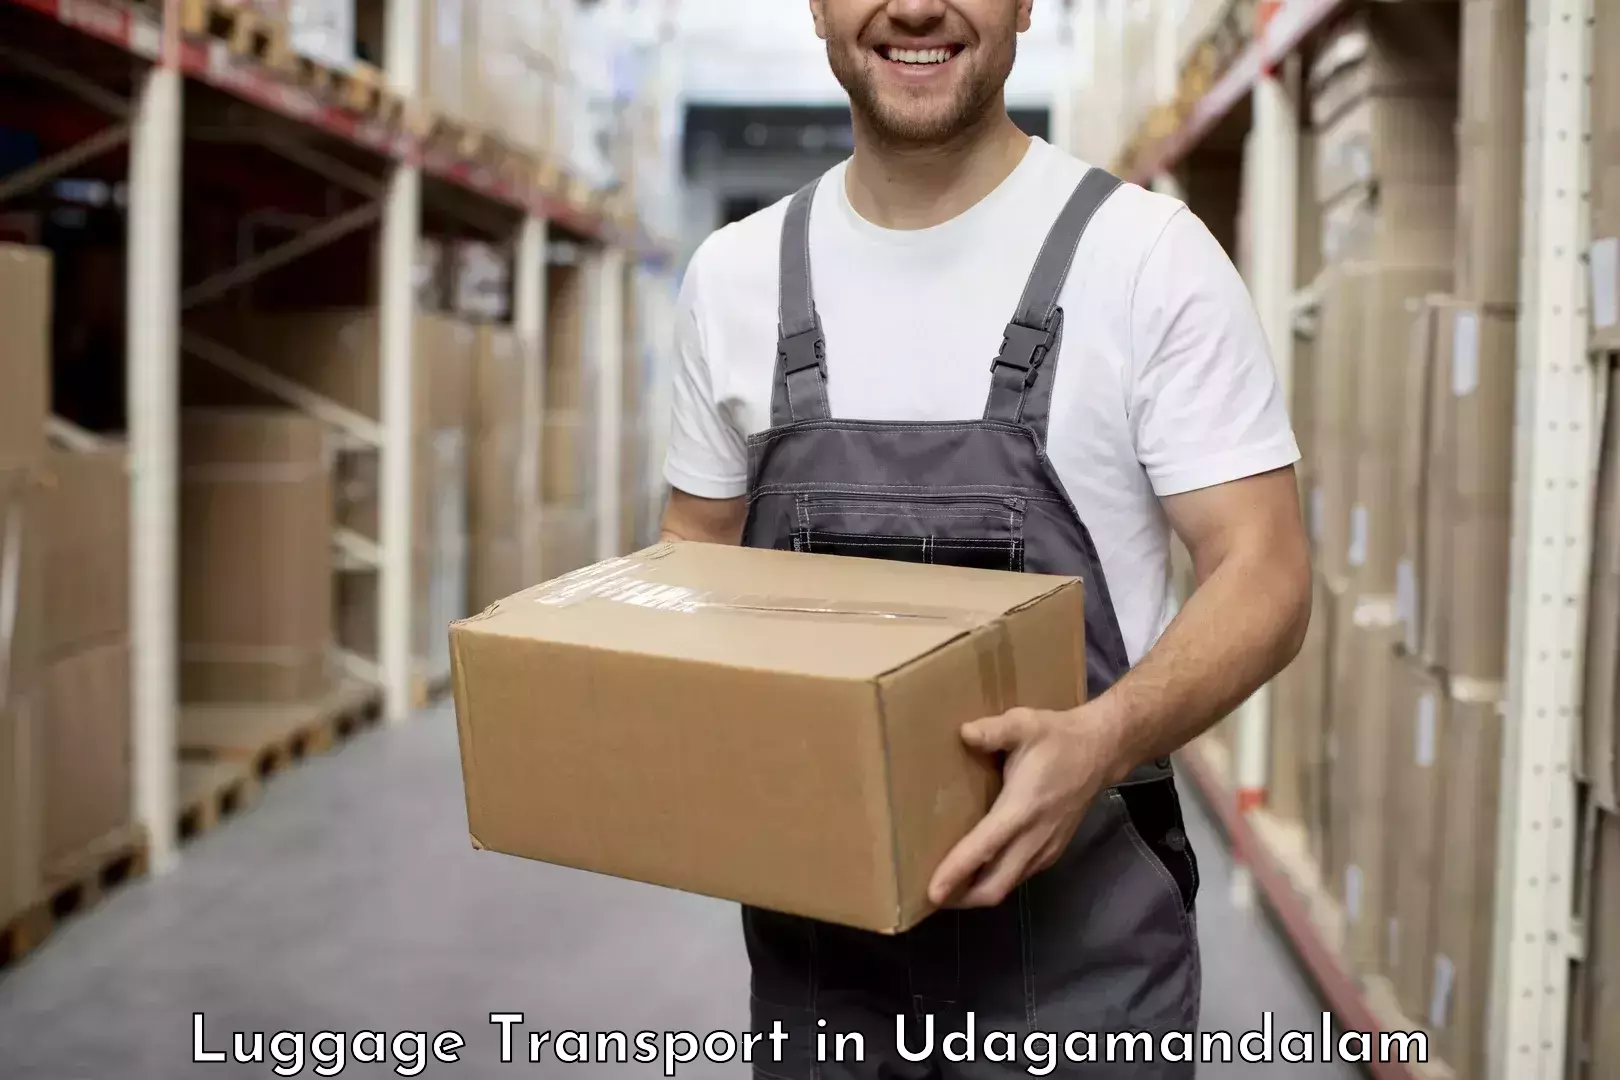 Luggage shipment logistics in Udagamandalam